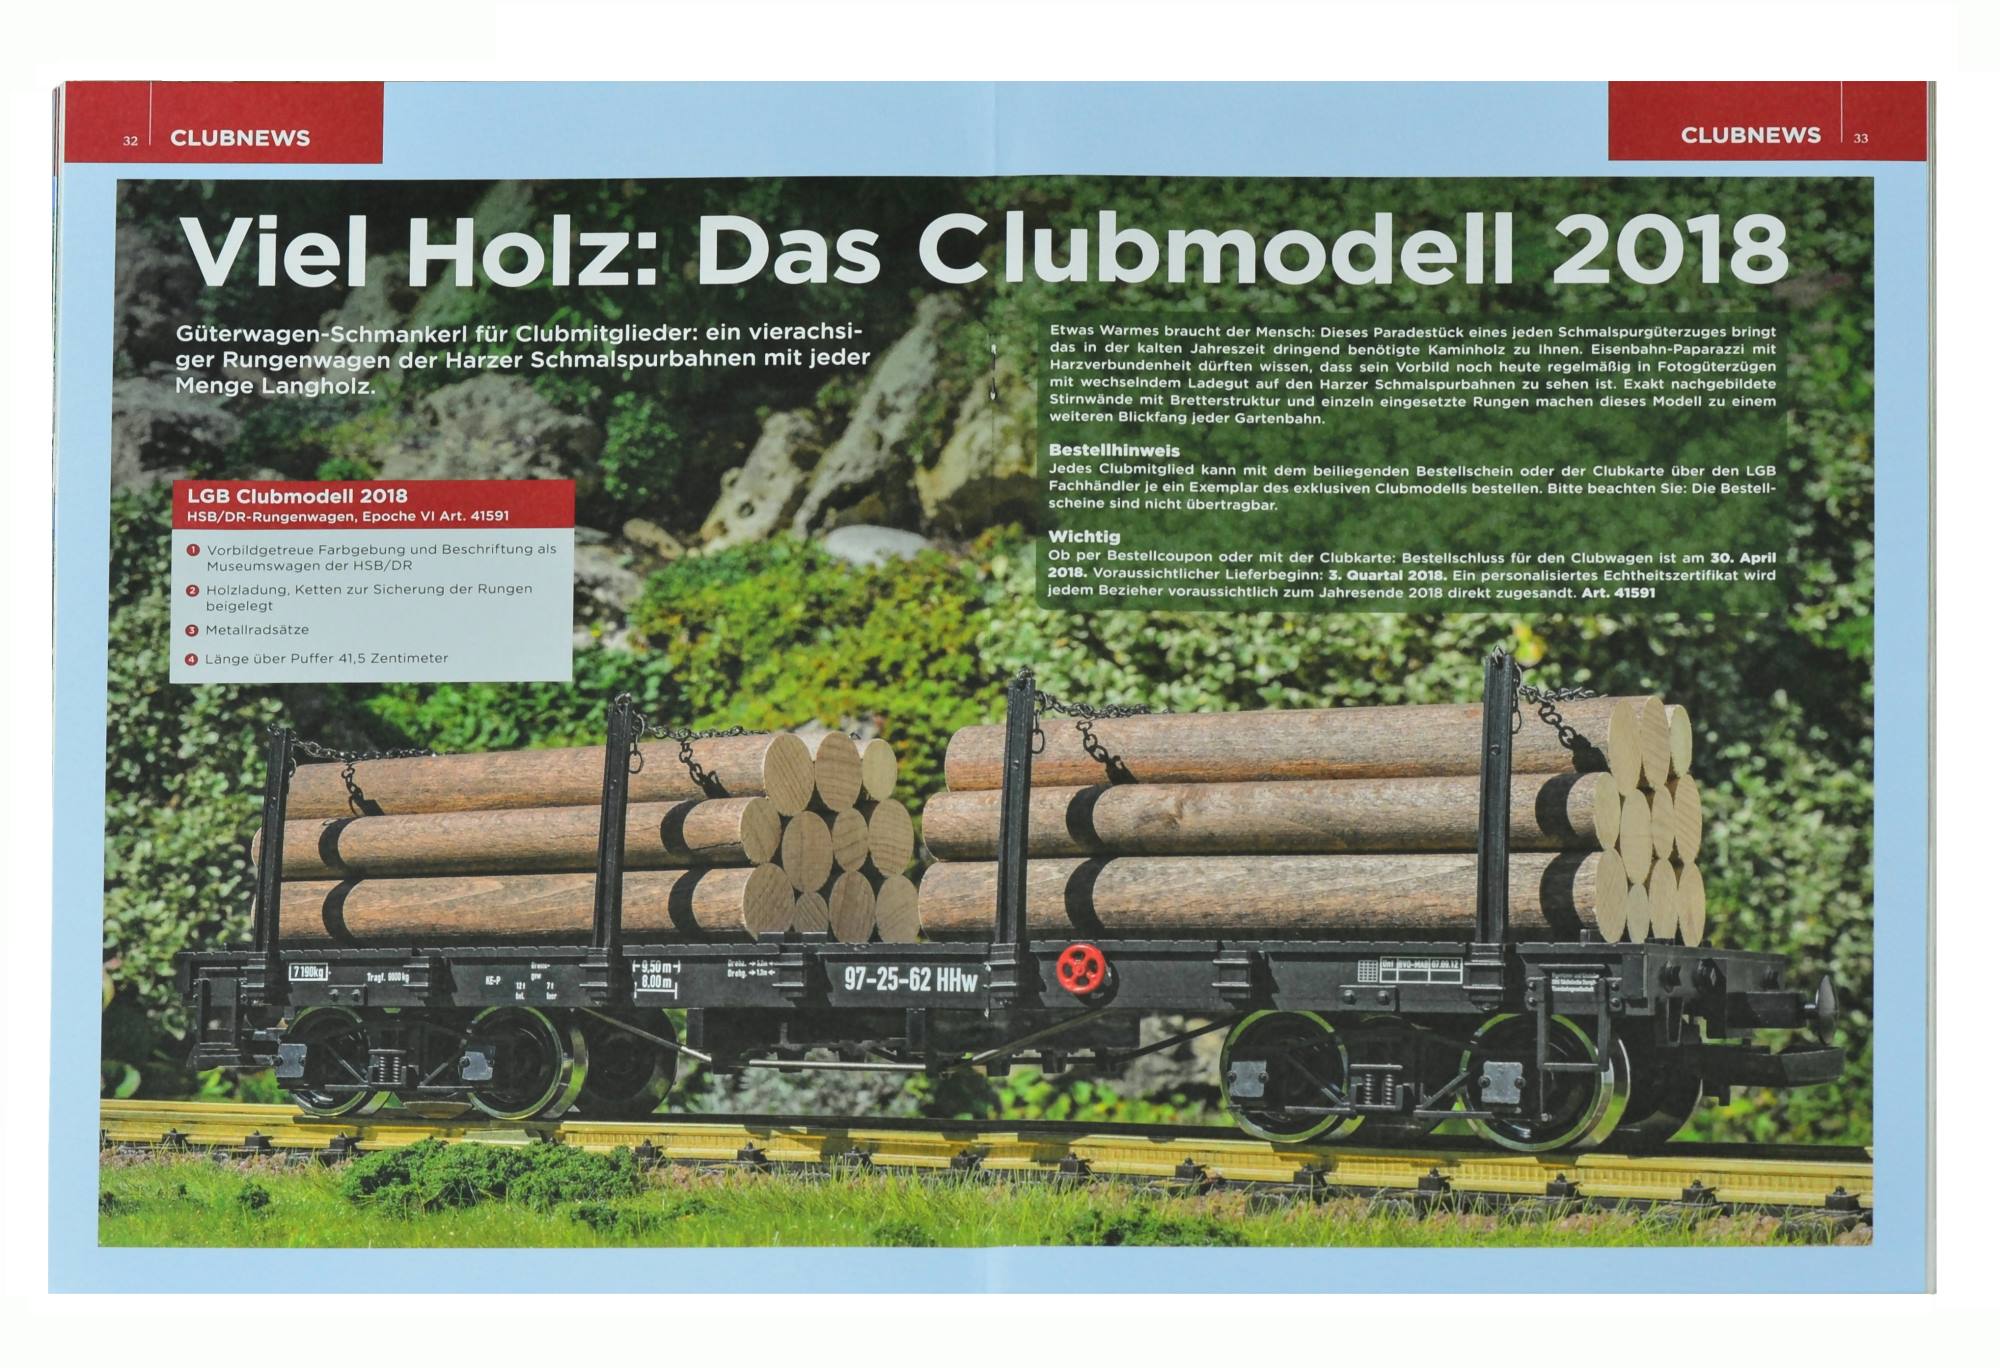 Viel Holz: Das Clubmodell 2018 - Gterwagen - Schmanker fr Clubmitglieder: ein vierachsiger Rungenwagen der Harzer Schmalspurbahnen mit jeder Menge Langholz als Ladegut. 